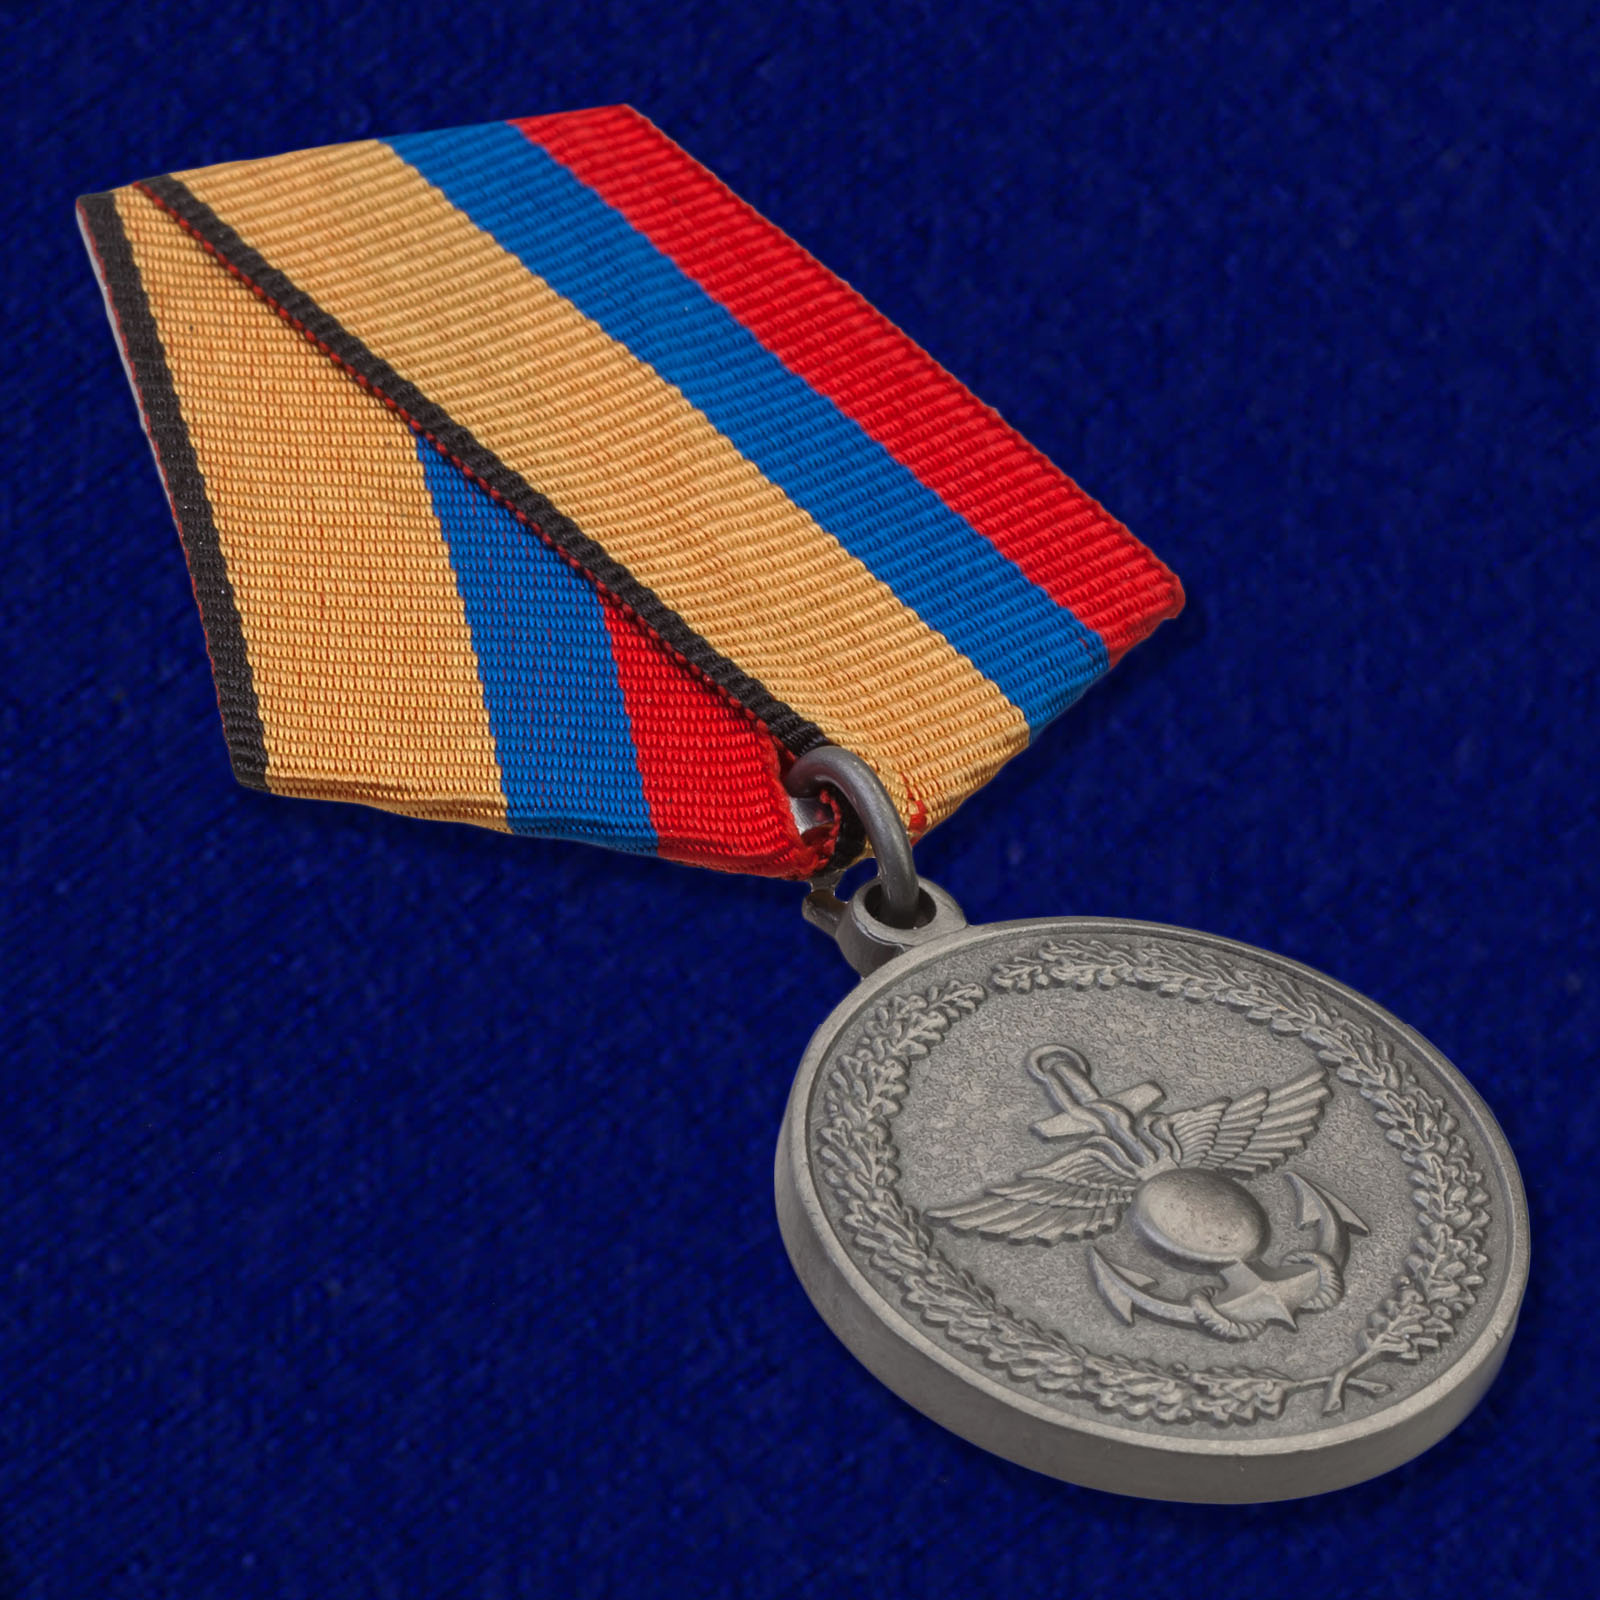 Медаль Минобороны РФ "За отличие в учениях" 